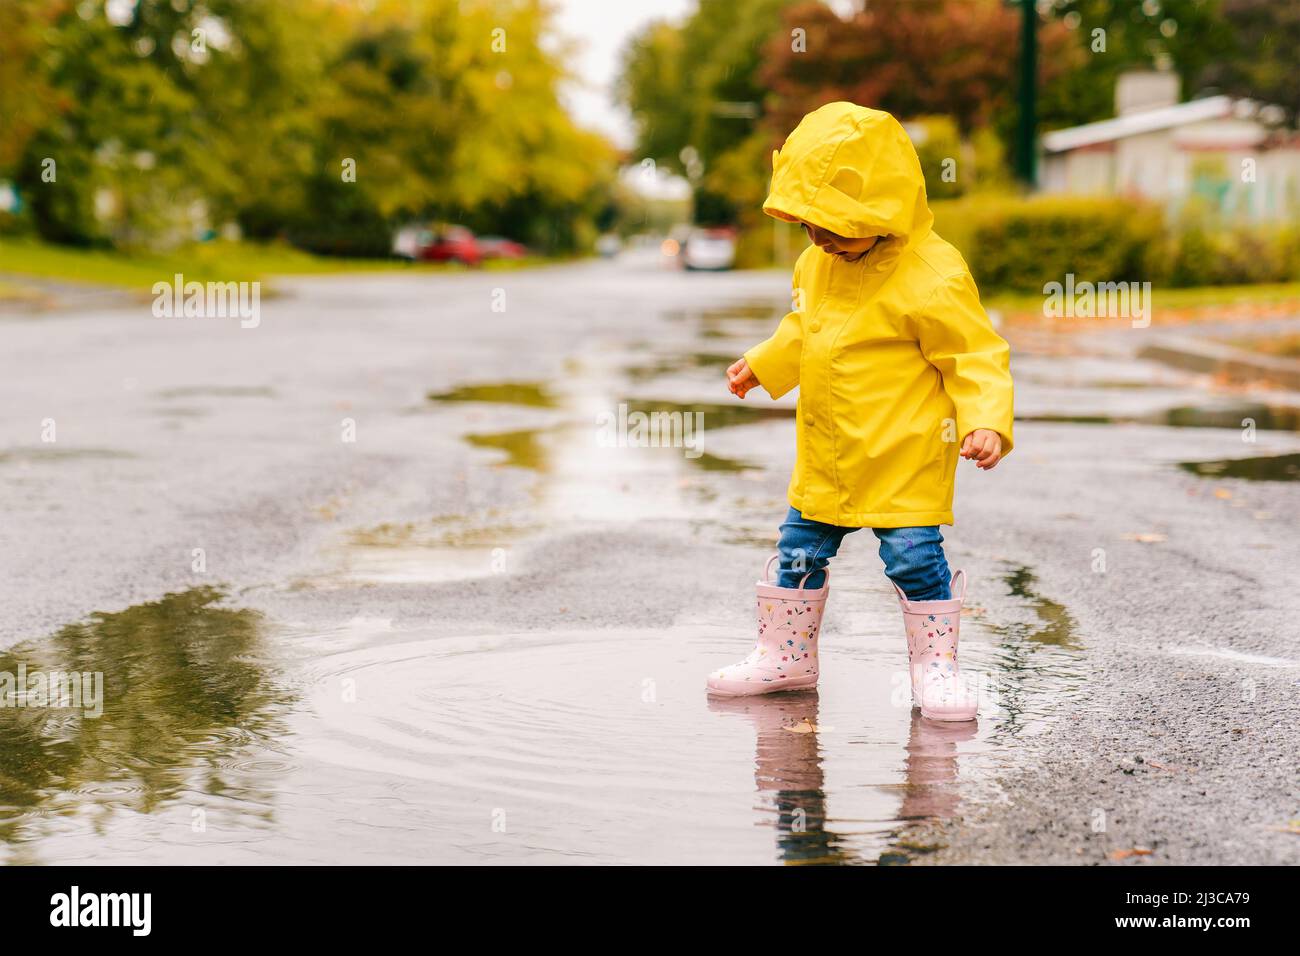 lindo bebé con abrigo amarillo impermeable y botas jugando la lluvia Fotografía de - Alamy